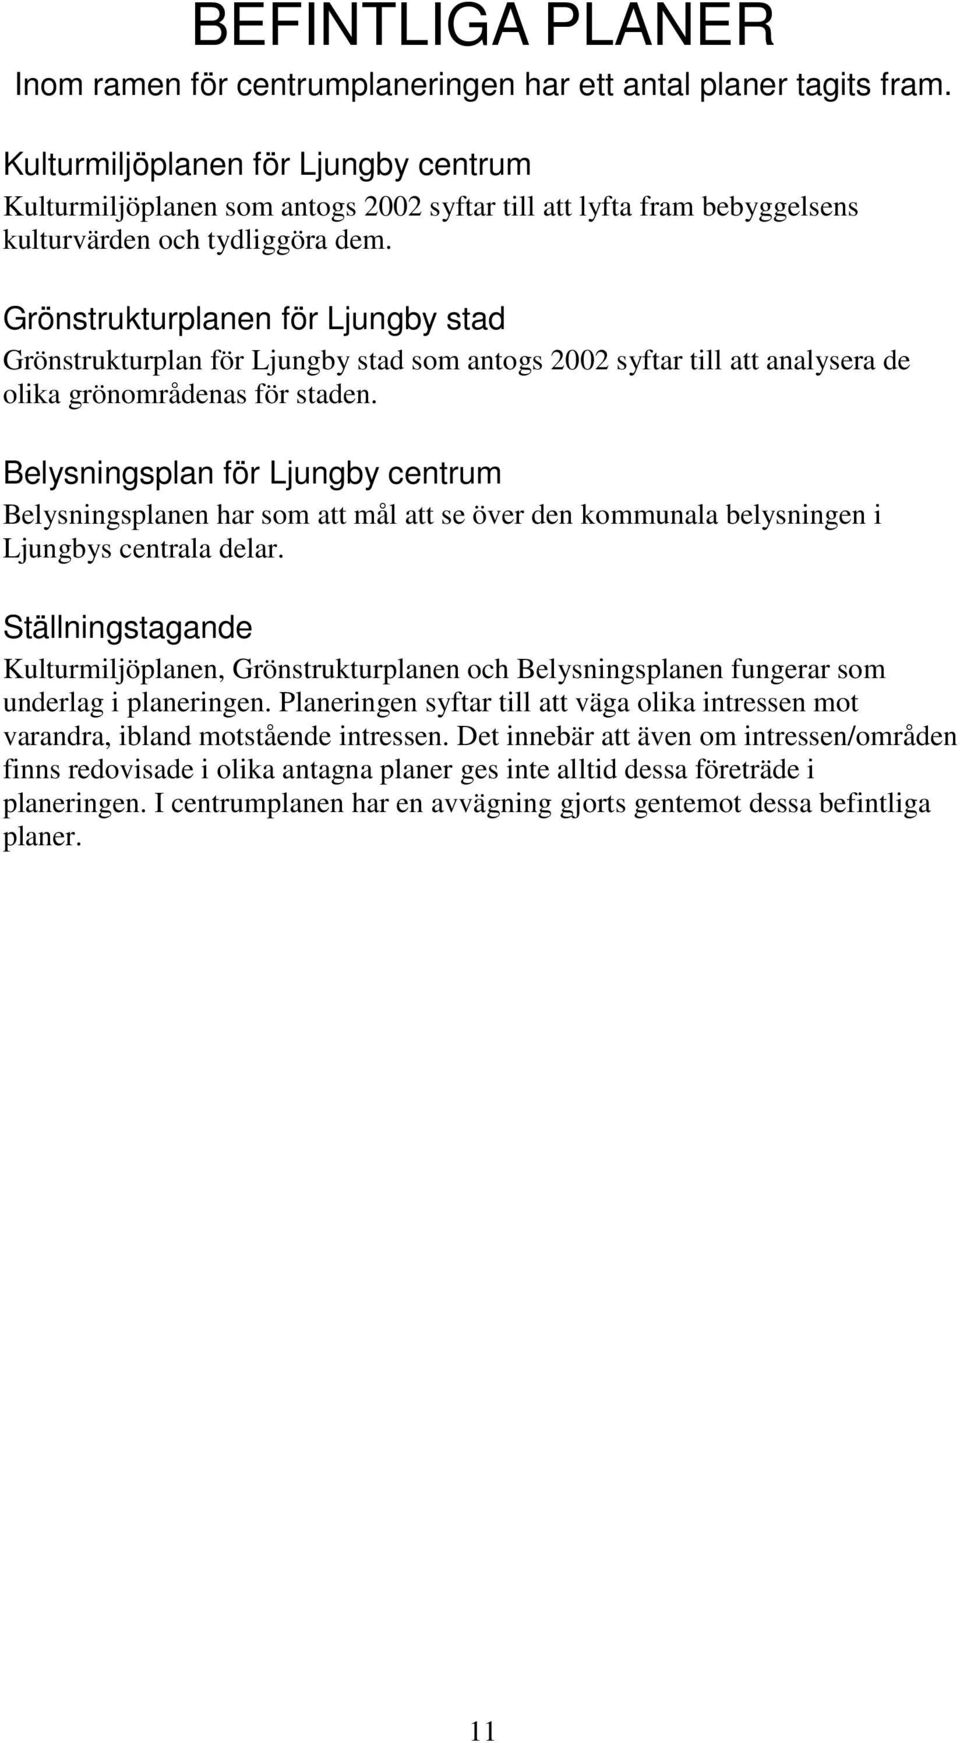 Grönstrukturplanen för Ljungby stad Grönstrukturplan för Ljungby stad som antogs 2002 syftar till att analysera de olika grönområdenas för staden.